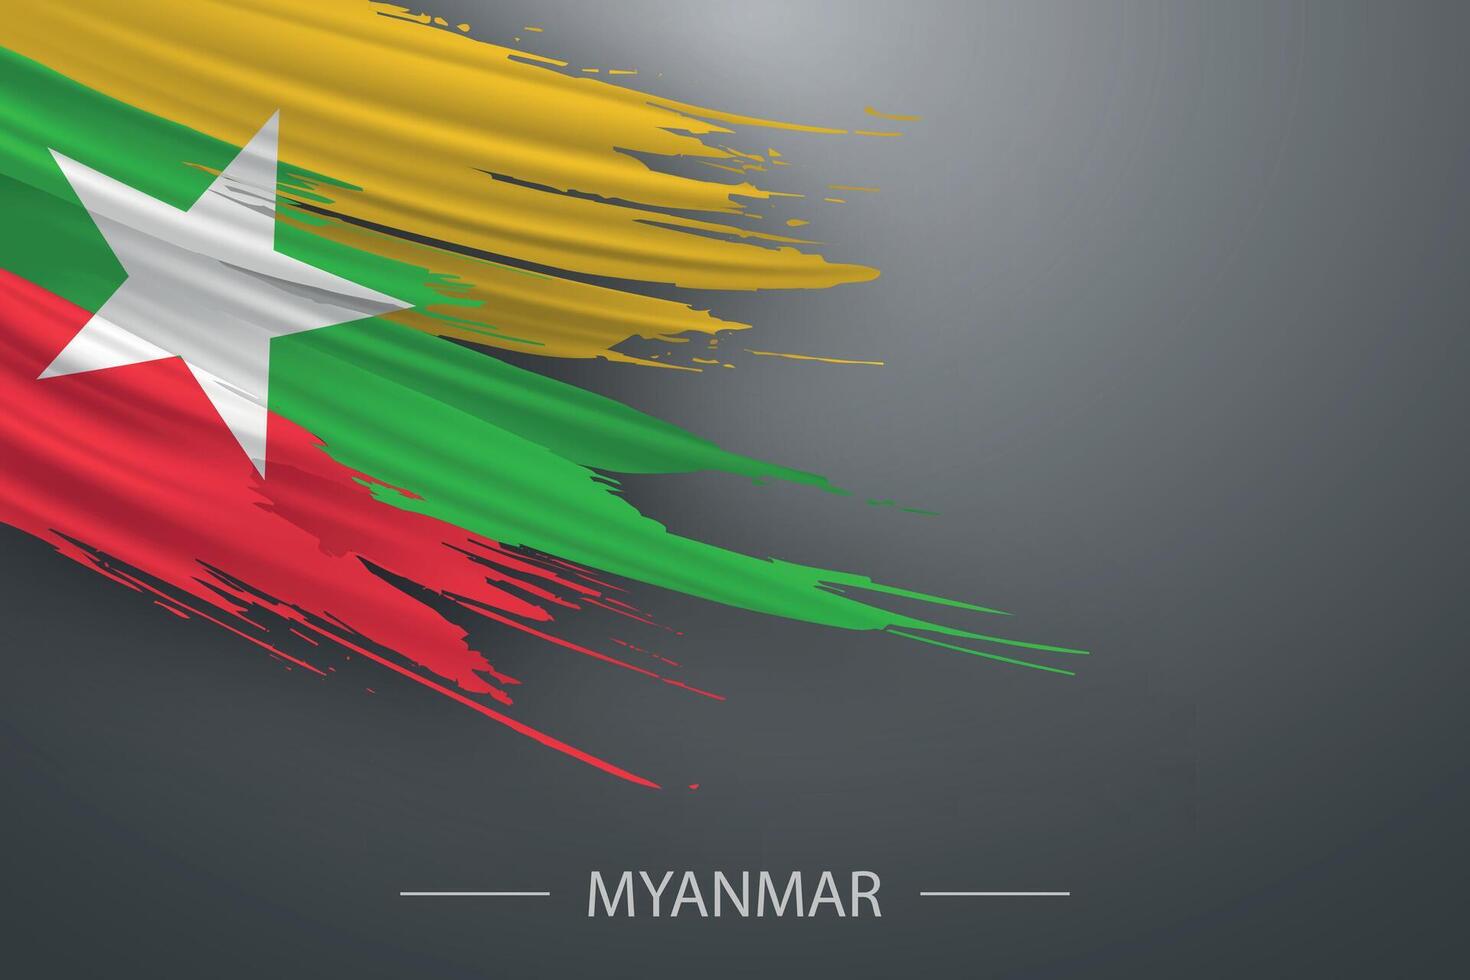 3d grunge brush stroke flag of Myanmar vector